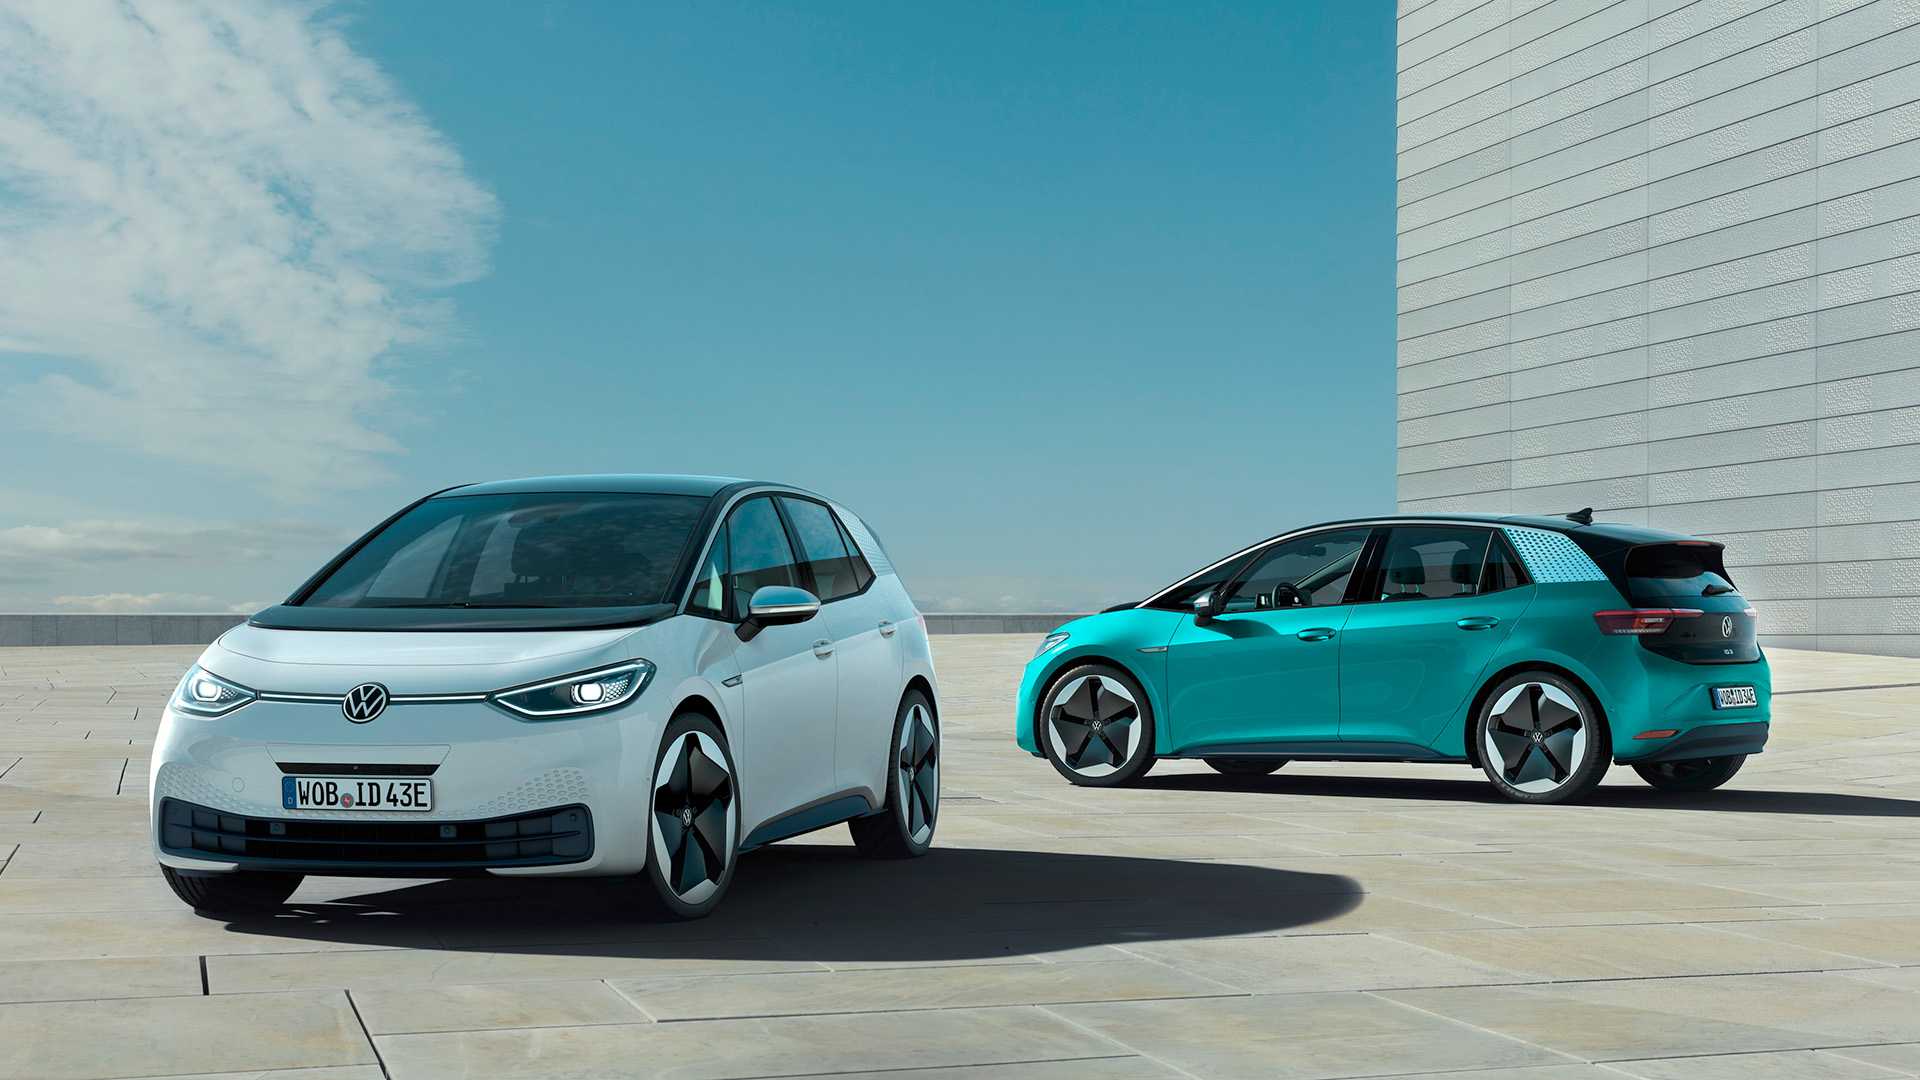 Značka Volkswagen osobní vozy splnila s velkými rezervami evropské cíle pro rok 2020 v oblasti flotilových emisí CO2